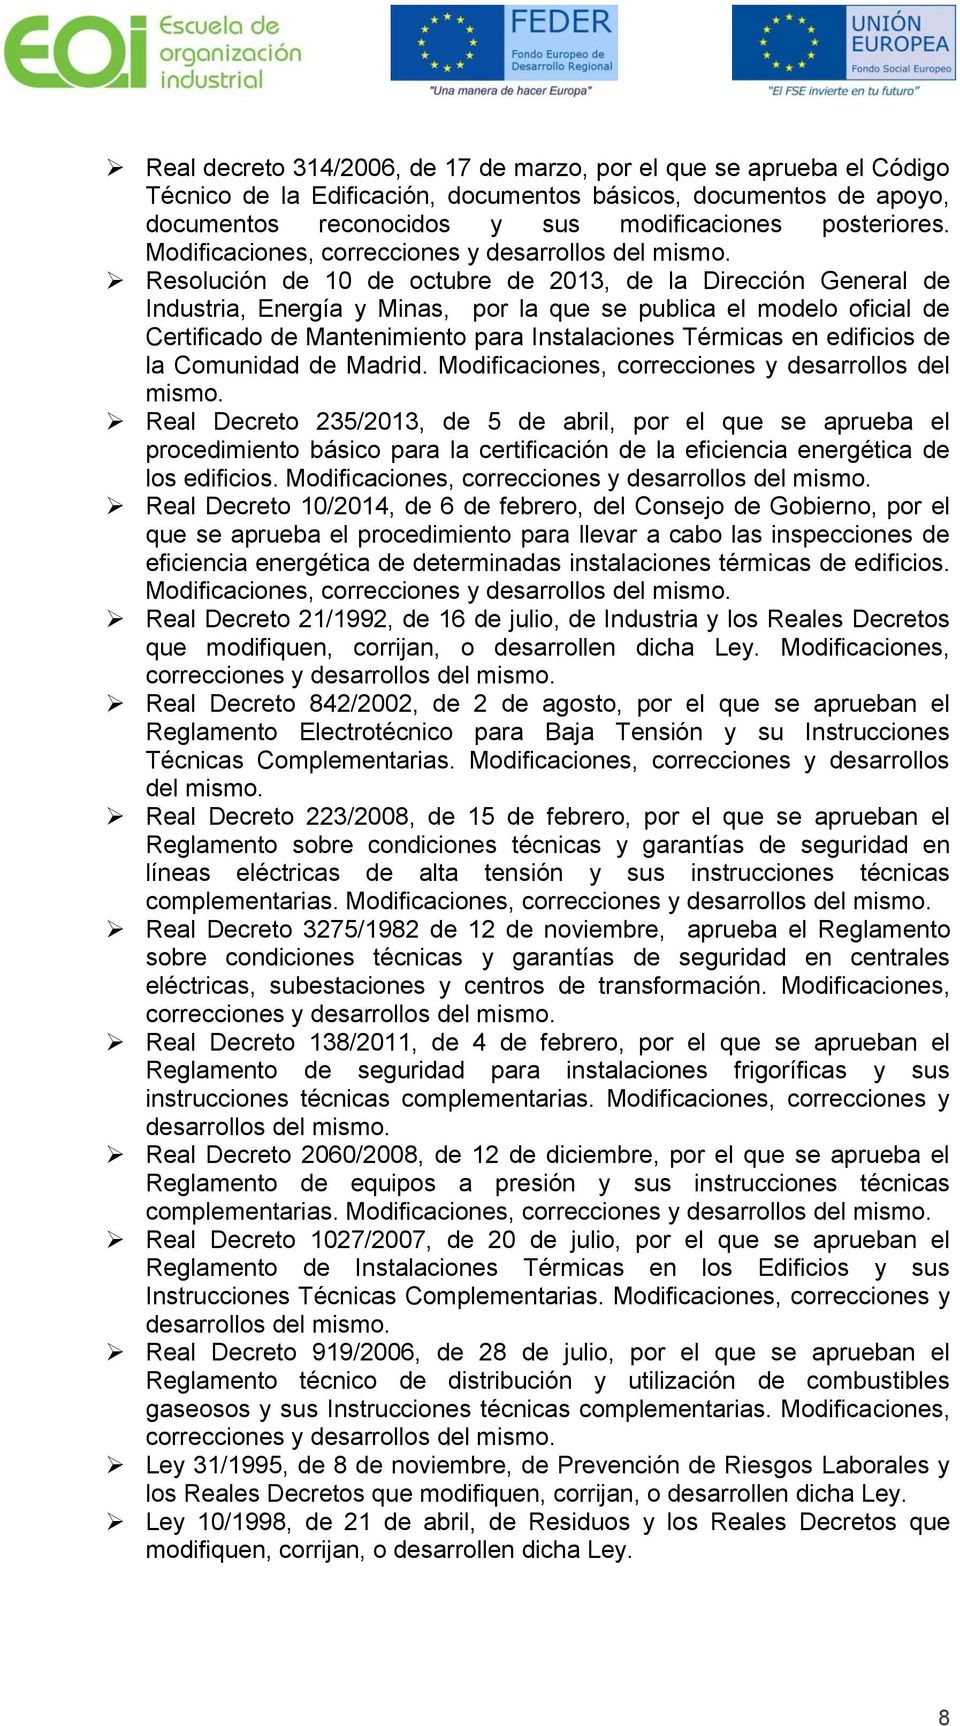 Reslución de 10 de ctubre de 2013, de la Dirección General de Industria, Energía y Minas, pr la que se publica el mdel ficial de Certificad de Mantenimient para Instalacines Térmicas en edificis de